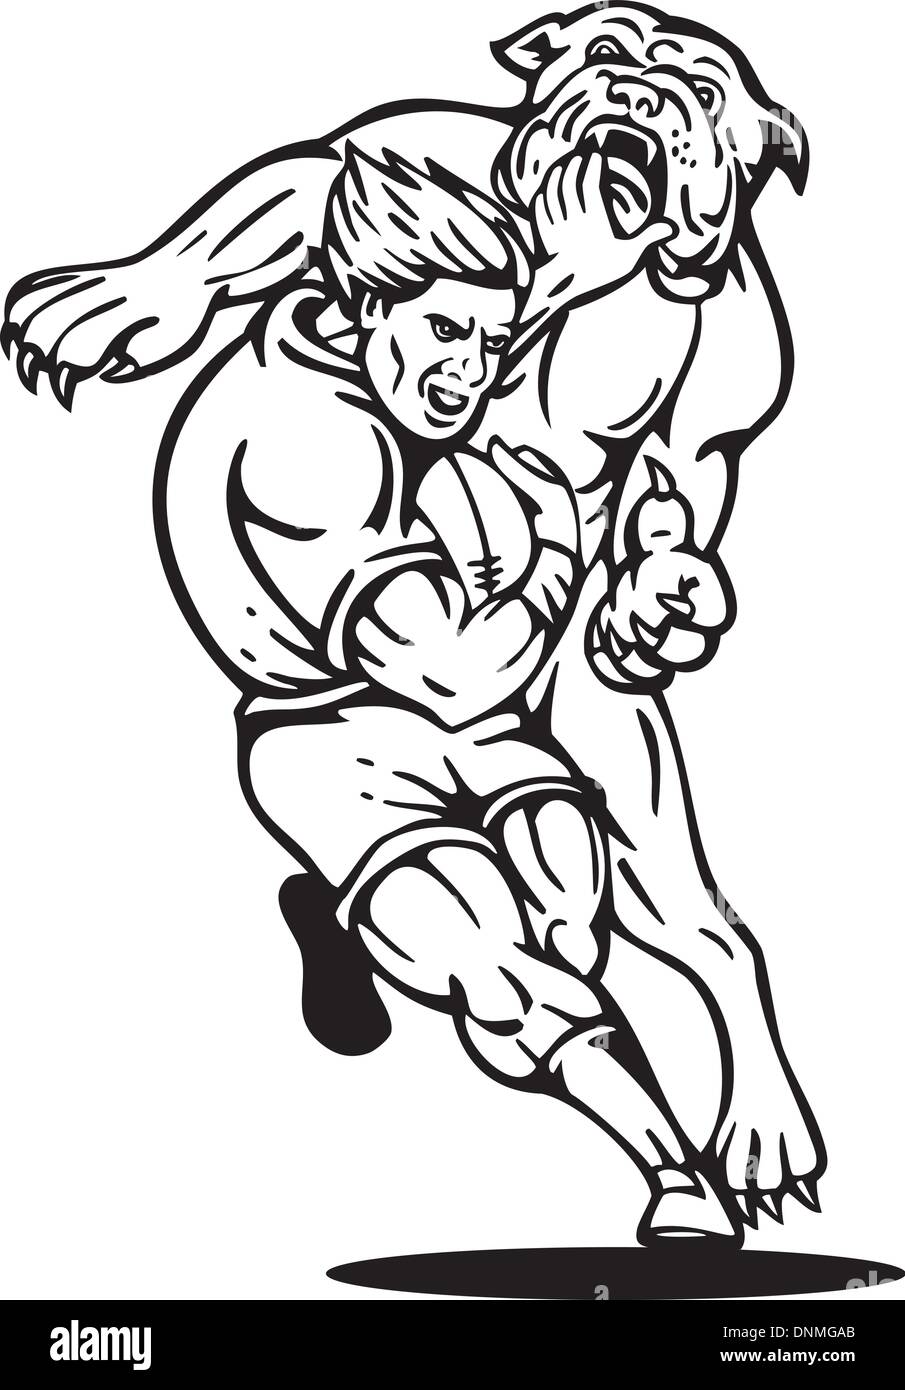 Illustration d'un joueur de rugby d'exécution avec la balle s'attaquer attaqué par un bouledogue sur fond isolé en noir et blanc Illustration de Vecteur